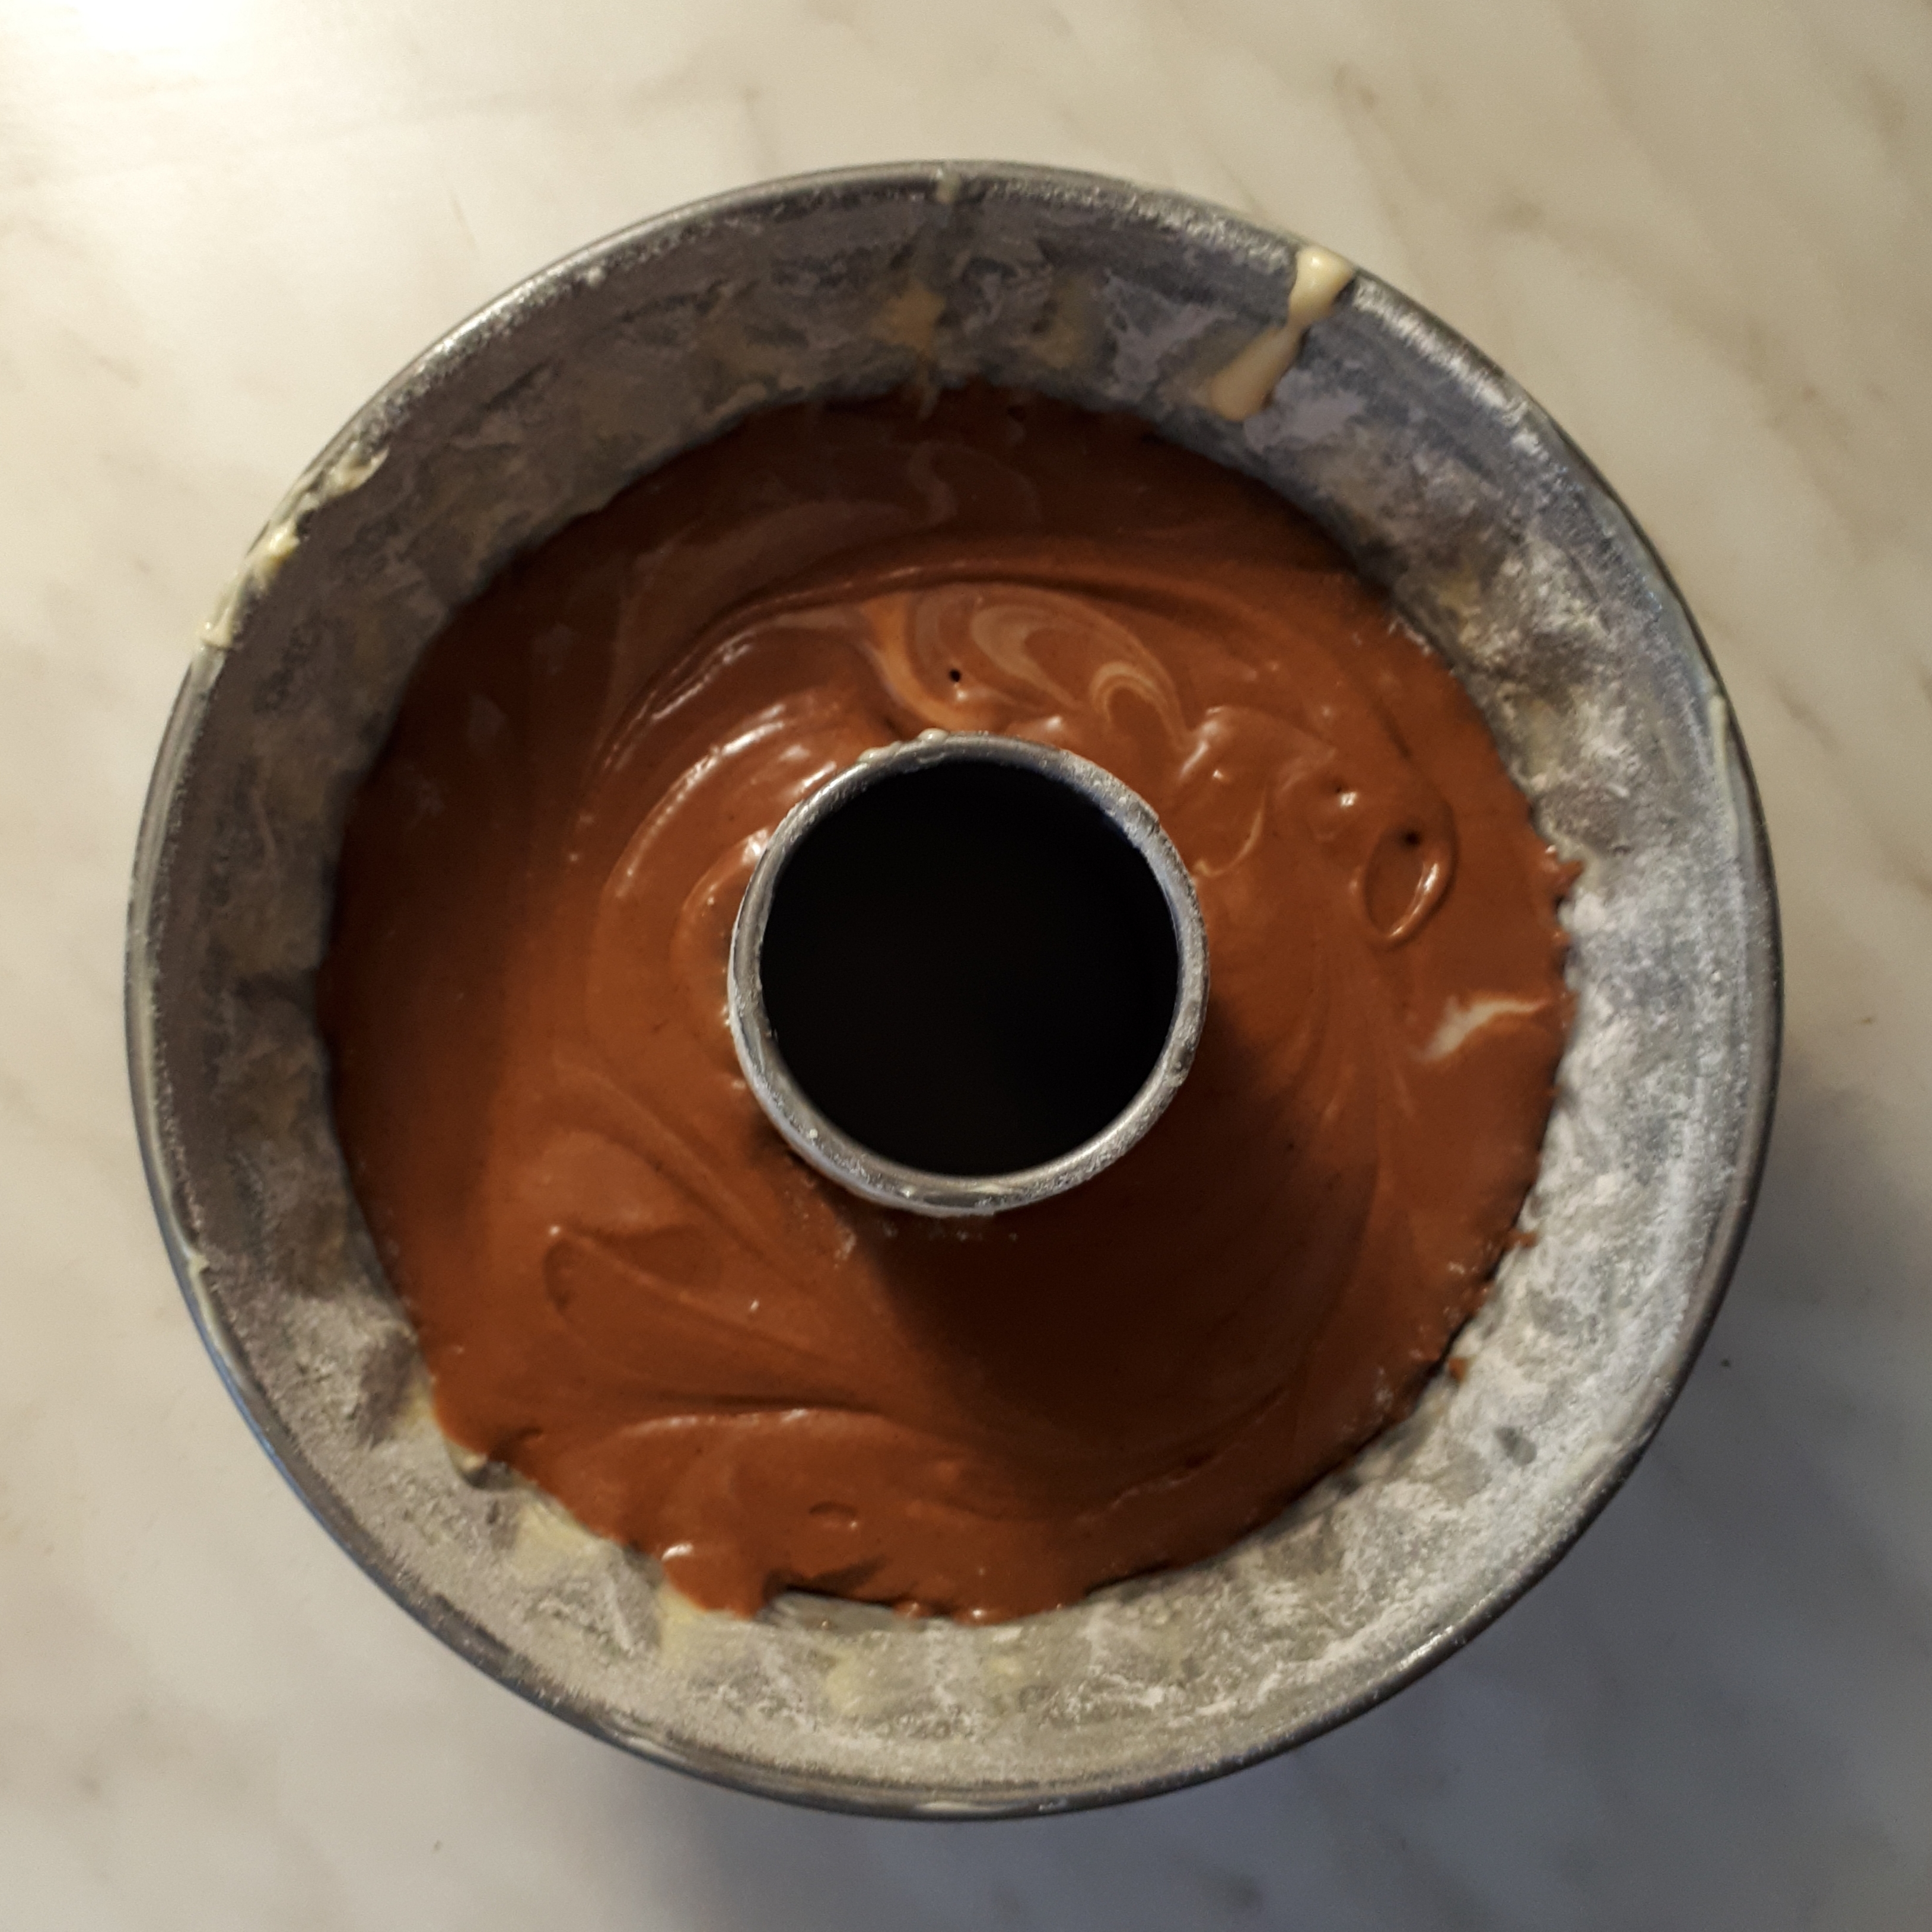 Bábovková forma vysypaná múkou s cestom svetlým a čokoládovým na mramorovom povrchu